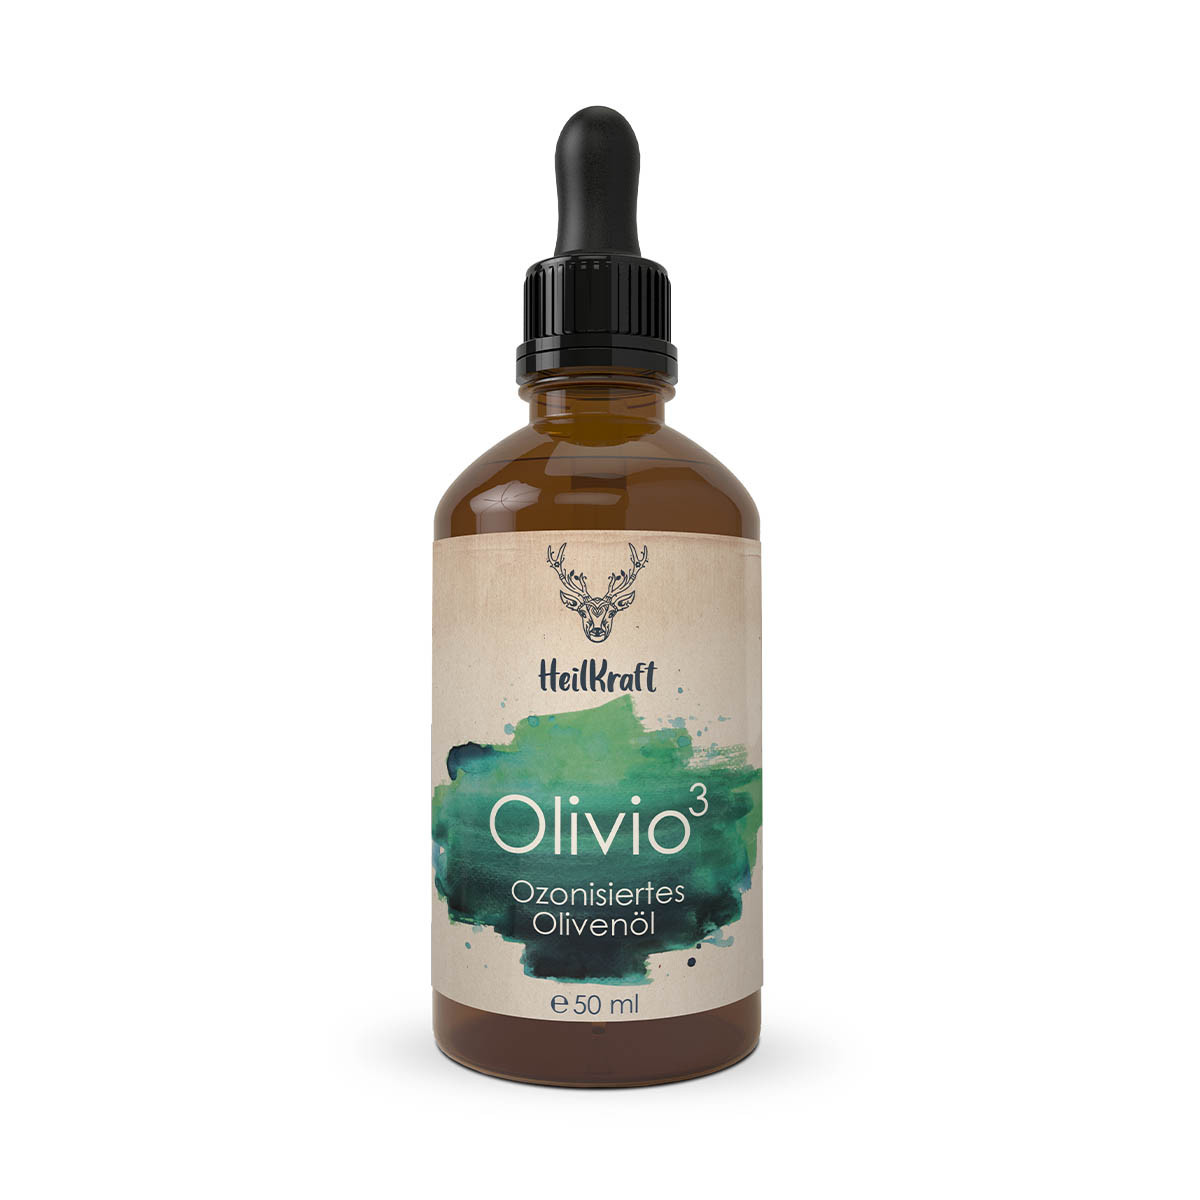 Heilkraft Olivio - Ozonisiertes Olivenöl - 50 Milliliter